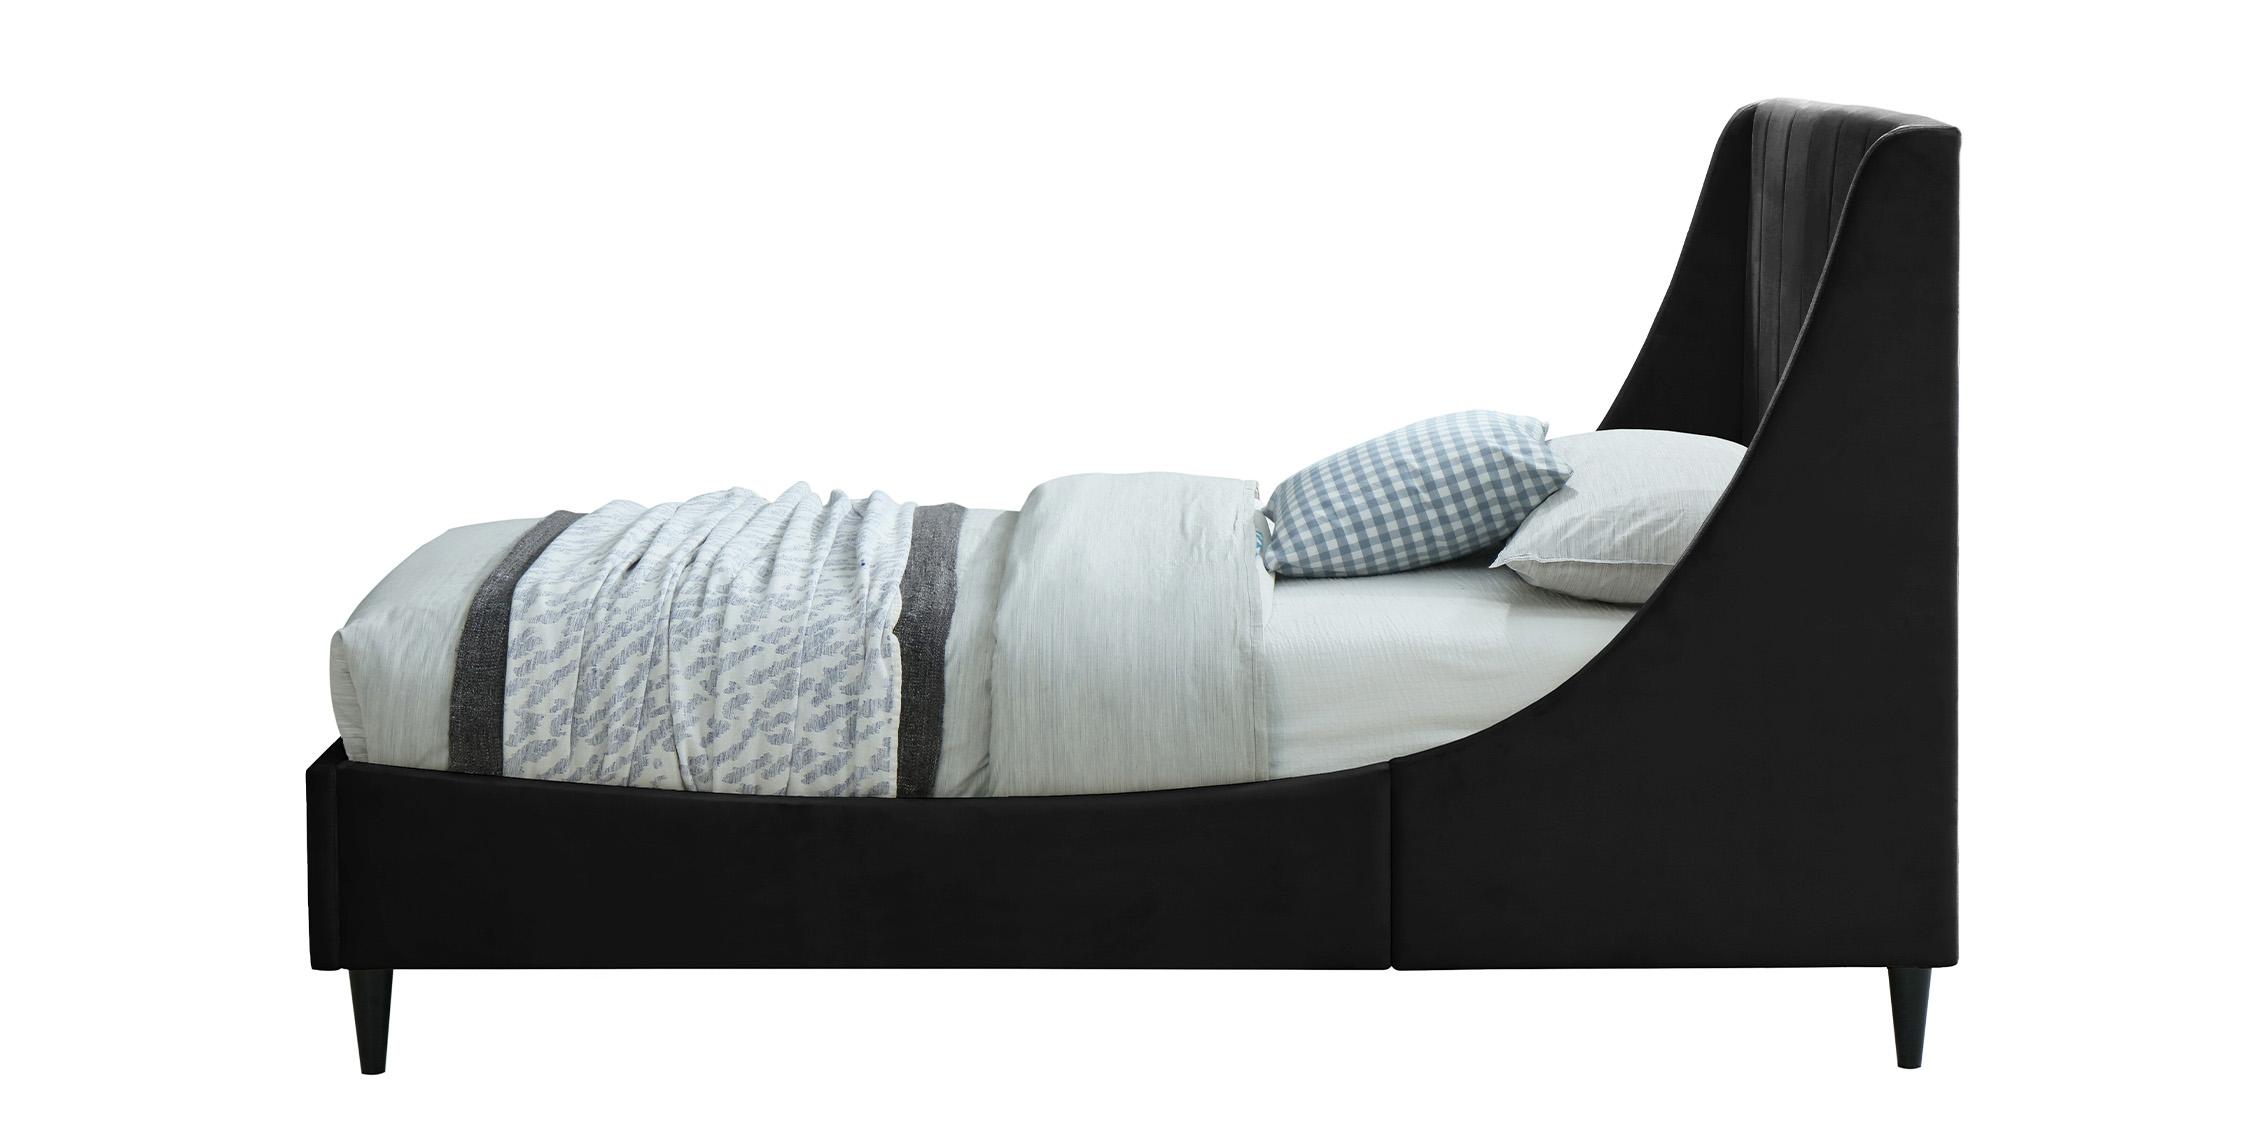 

    
EvaBlack-T Meridian Furniture Platform Bed
